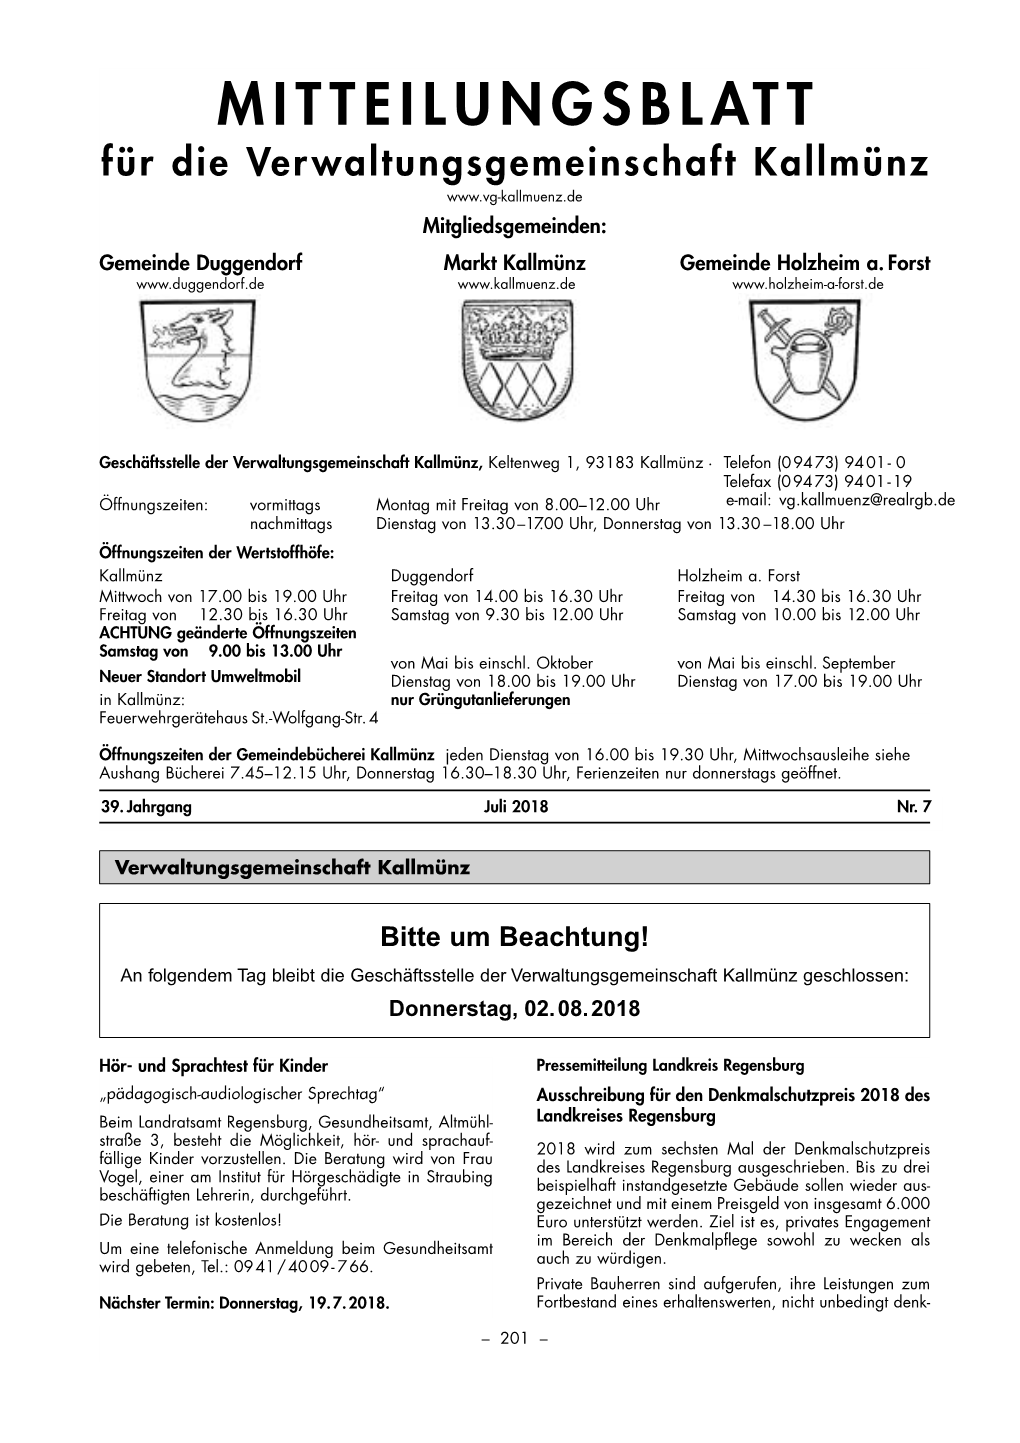 MITTEILUNGSBLATT Für Die Verwaltungsgemeinschaft Kallmünz Mitgliedsgemeinden: Gemeinde Duggendorf Markt Kallmünz Gemeinde Holzheim A